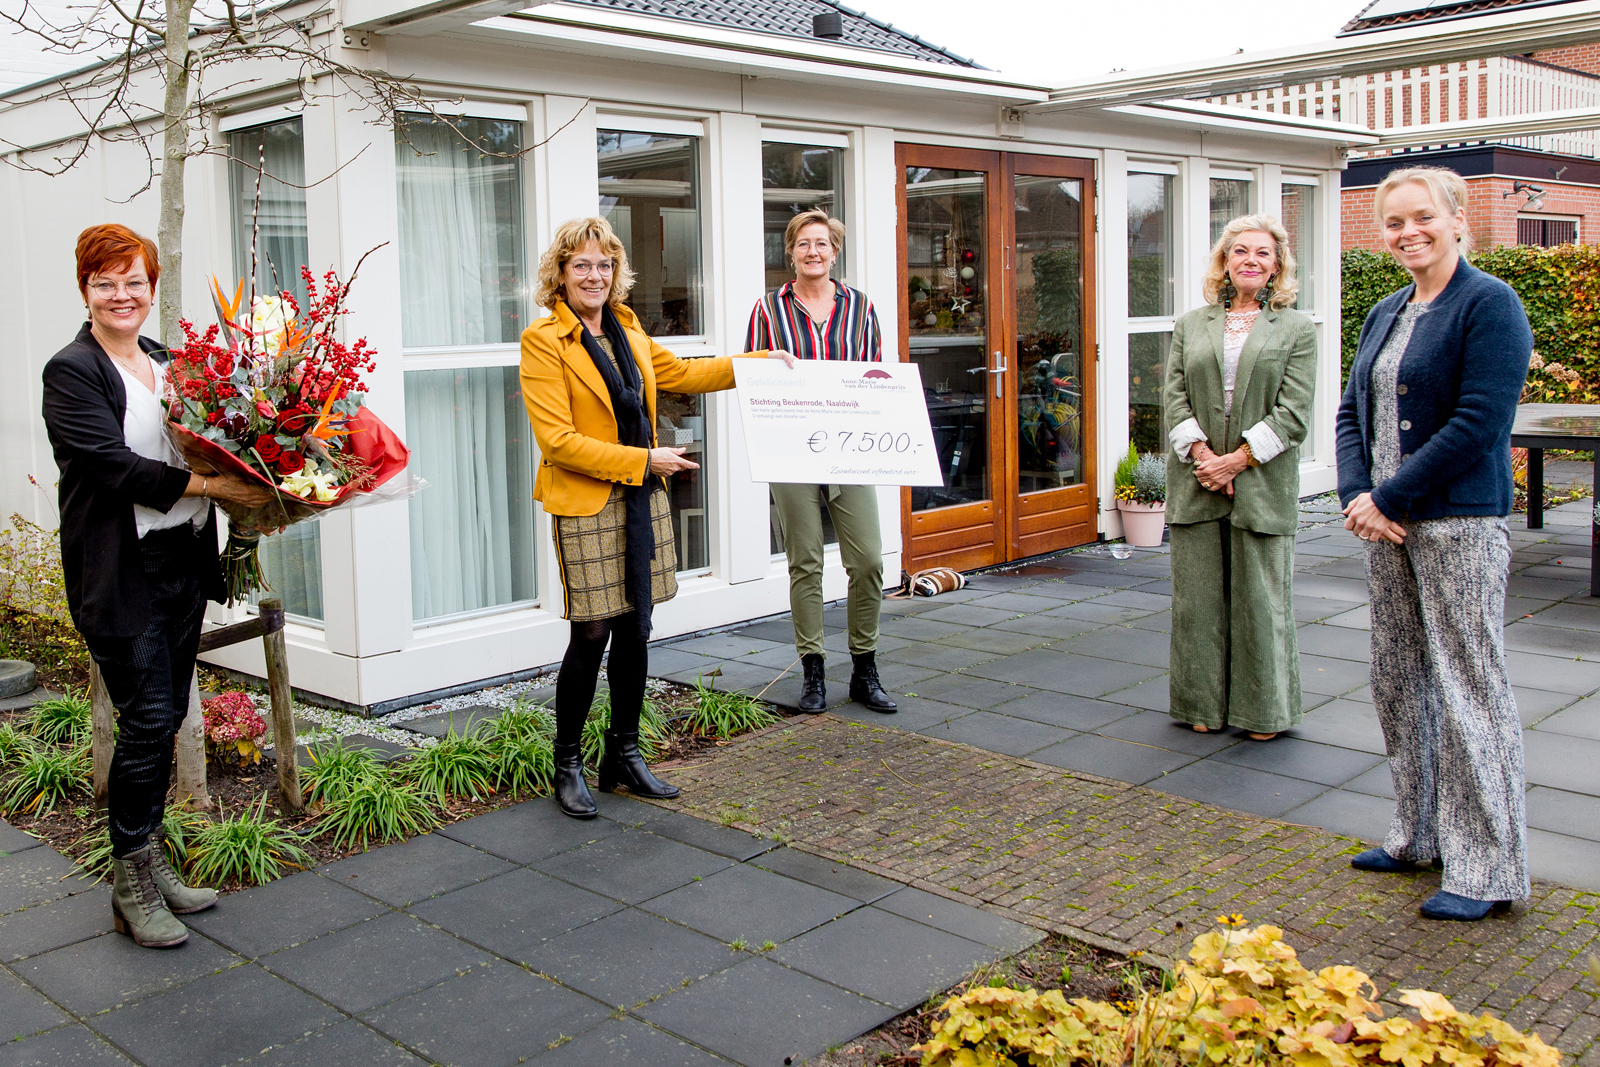 'Stichting Beukenrode' uit Naaldwijk kreeg eveneens een mooie bos bloemen en een cheque met een symbolisch bedrag van elk € 7.500,-